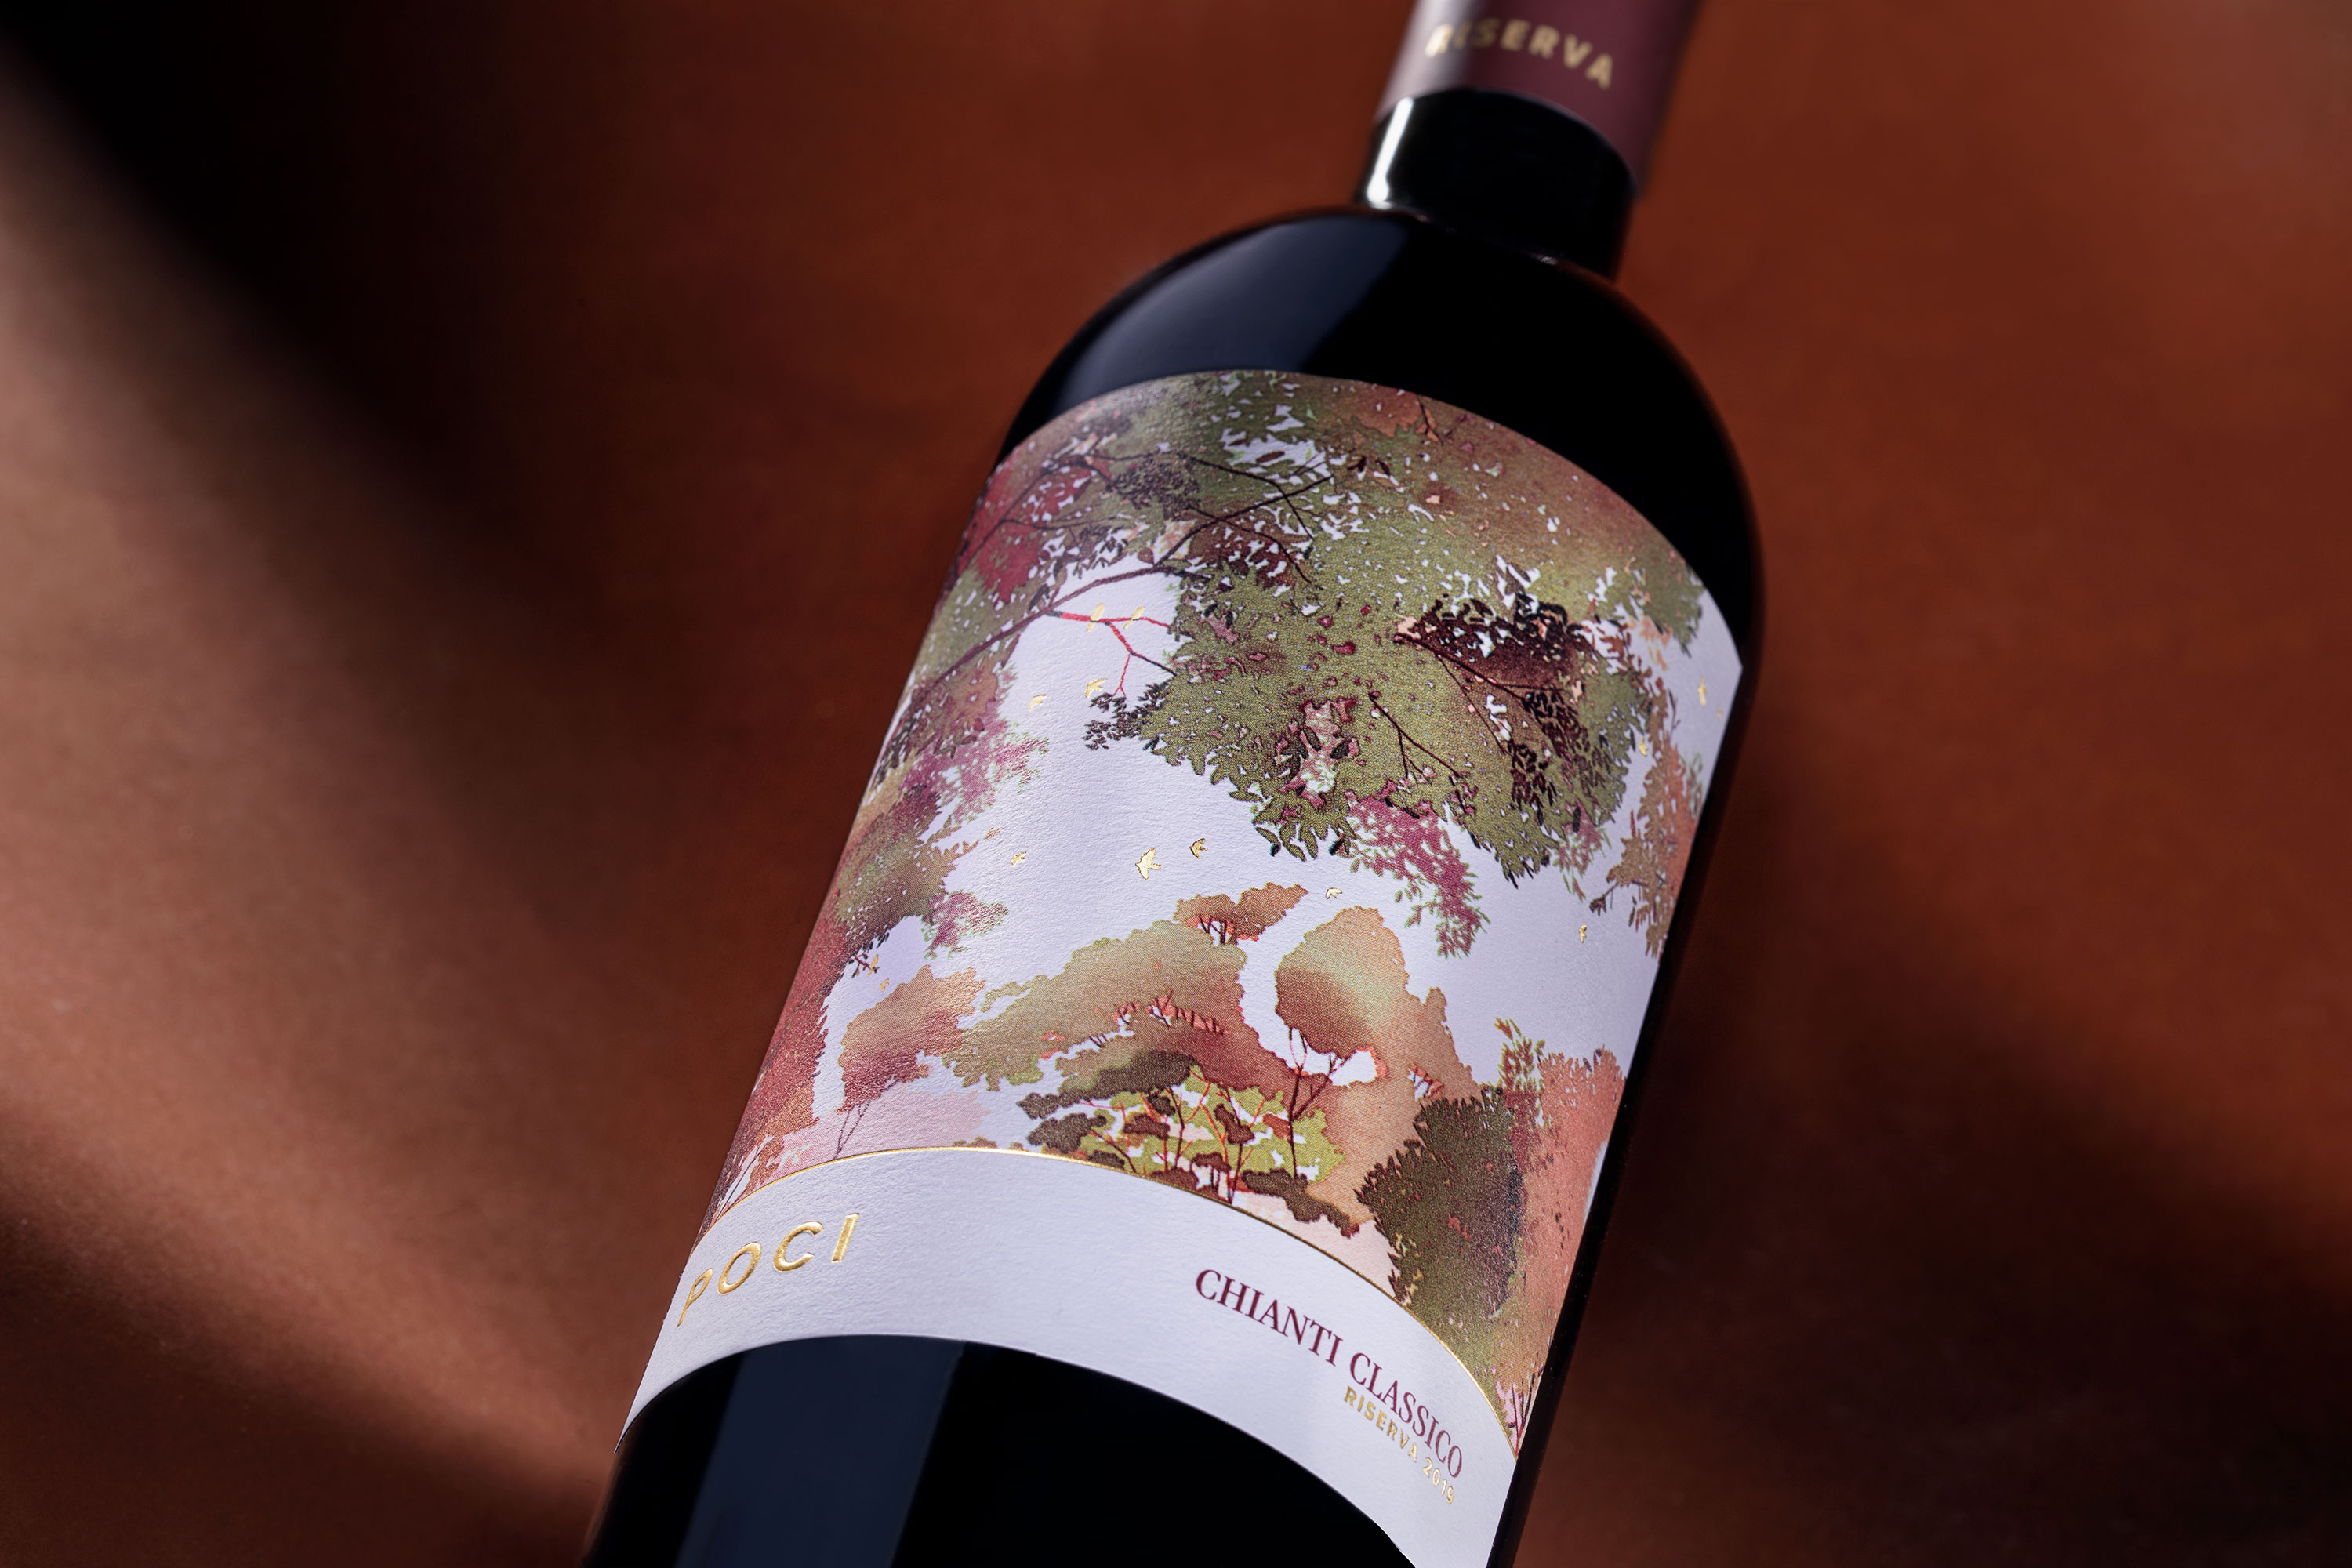 Andrea Castelletti Studio Creates Label Design and Illustration for Chianti Wine and Olive Oil